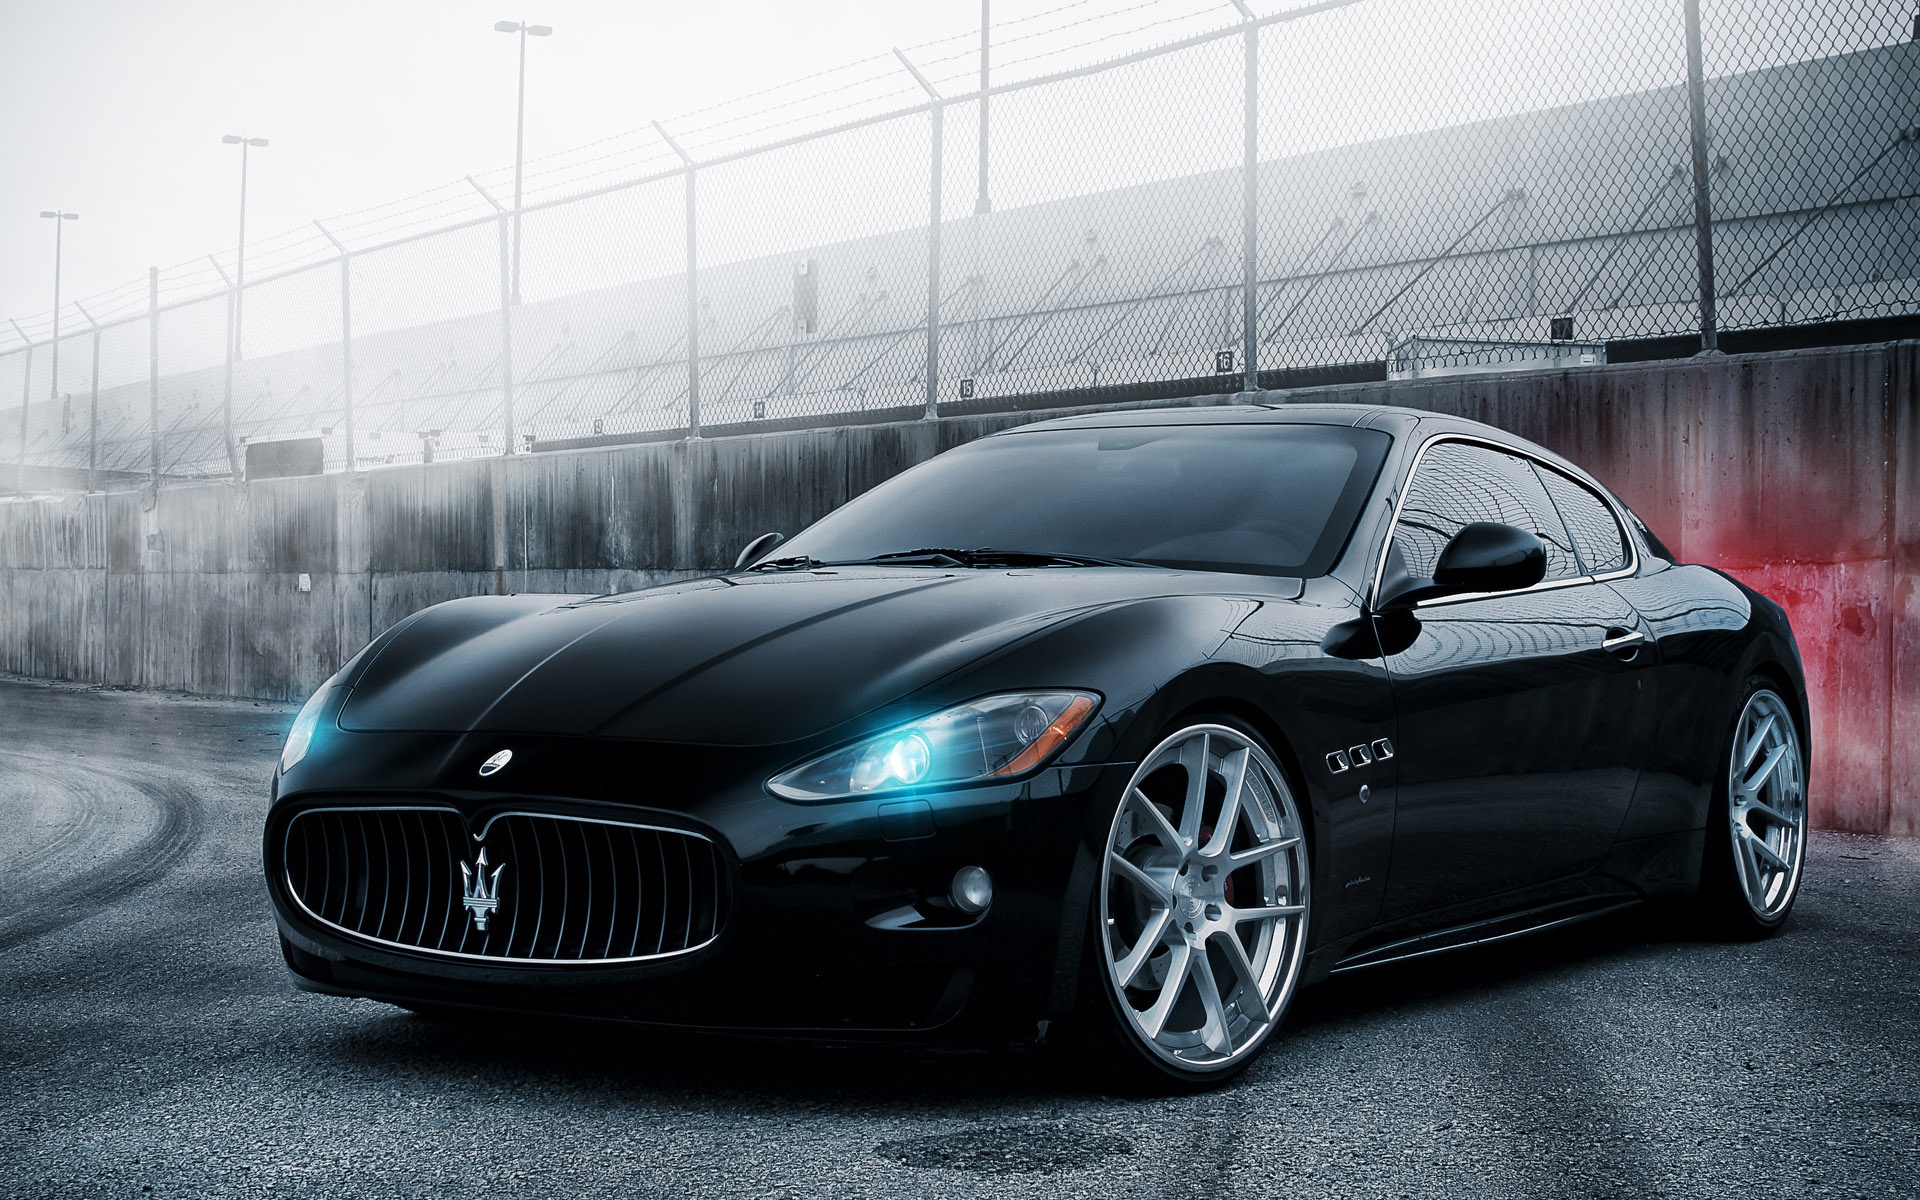 2011 Maserati Granturismo | The One Car